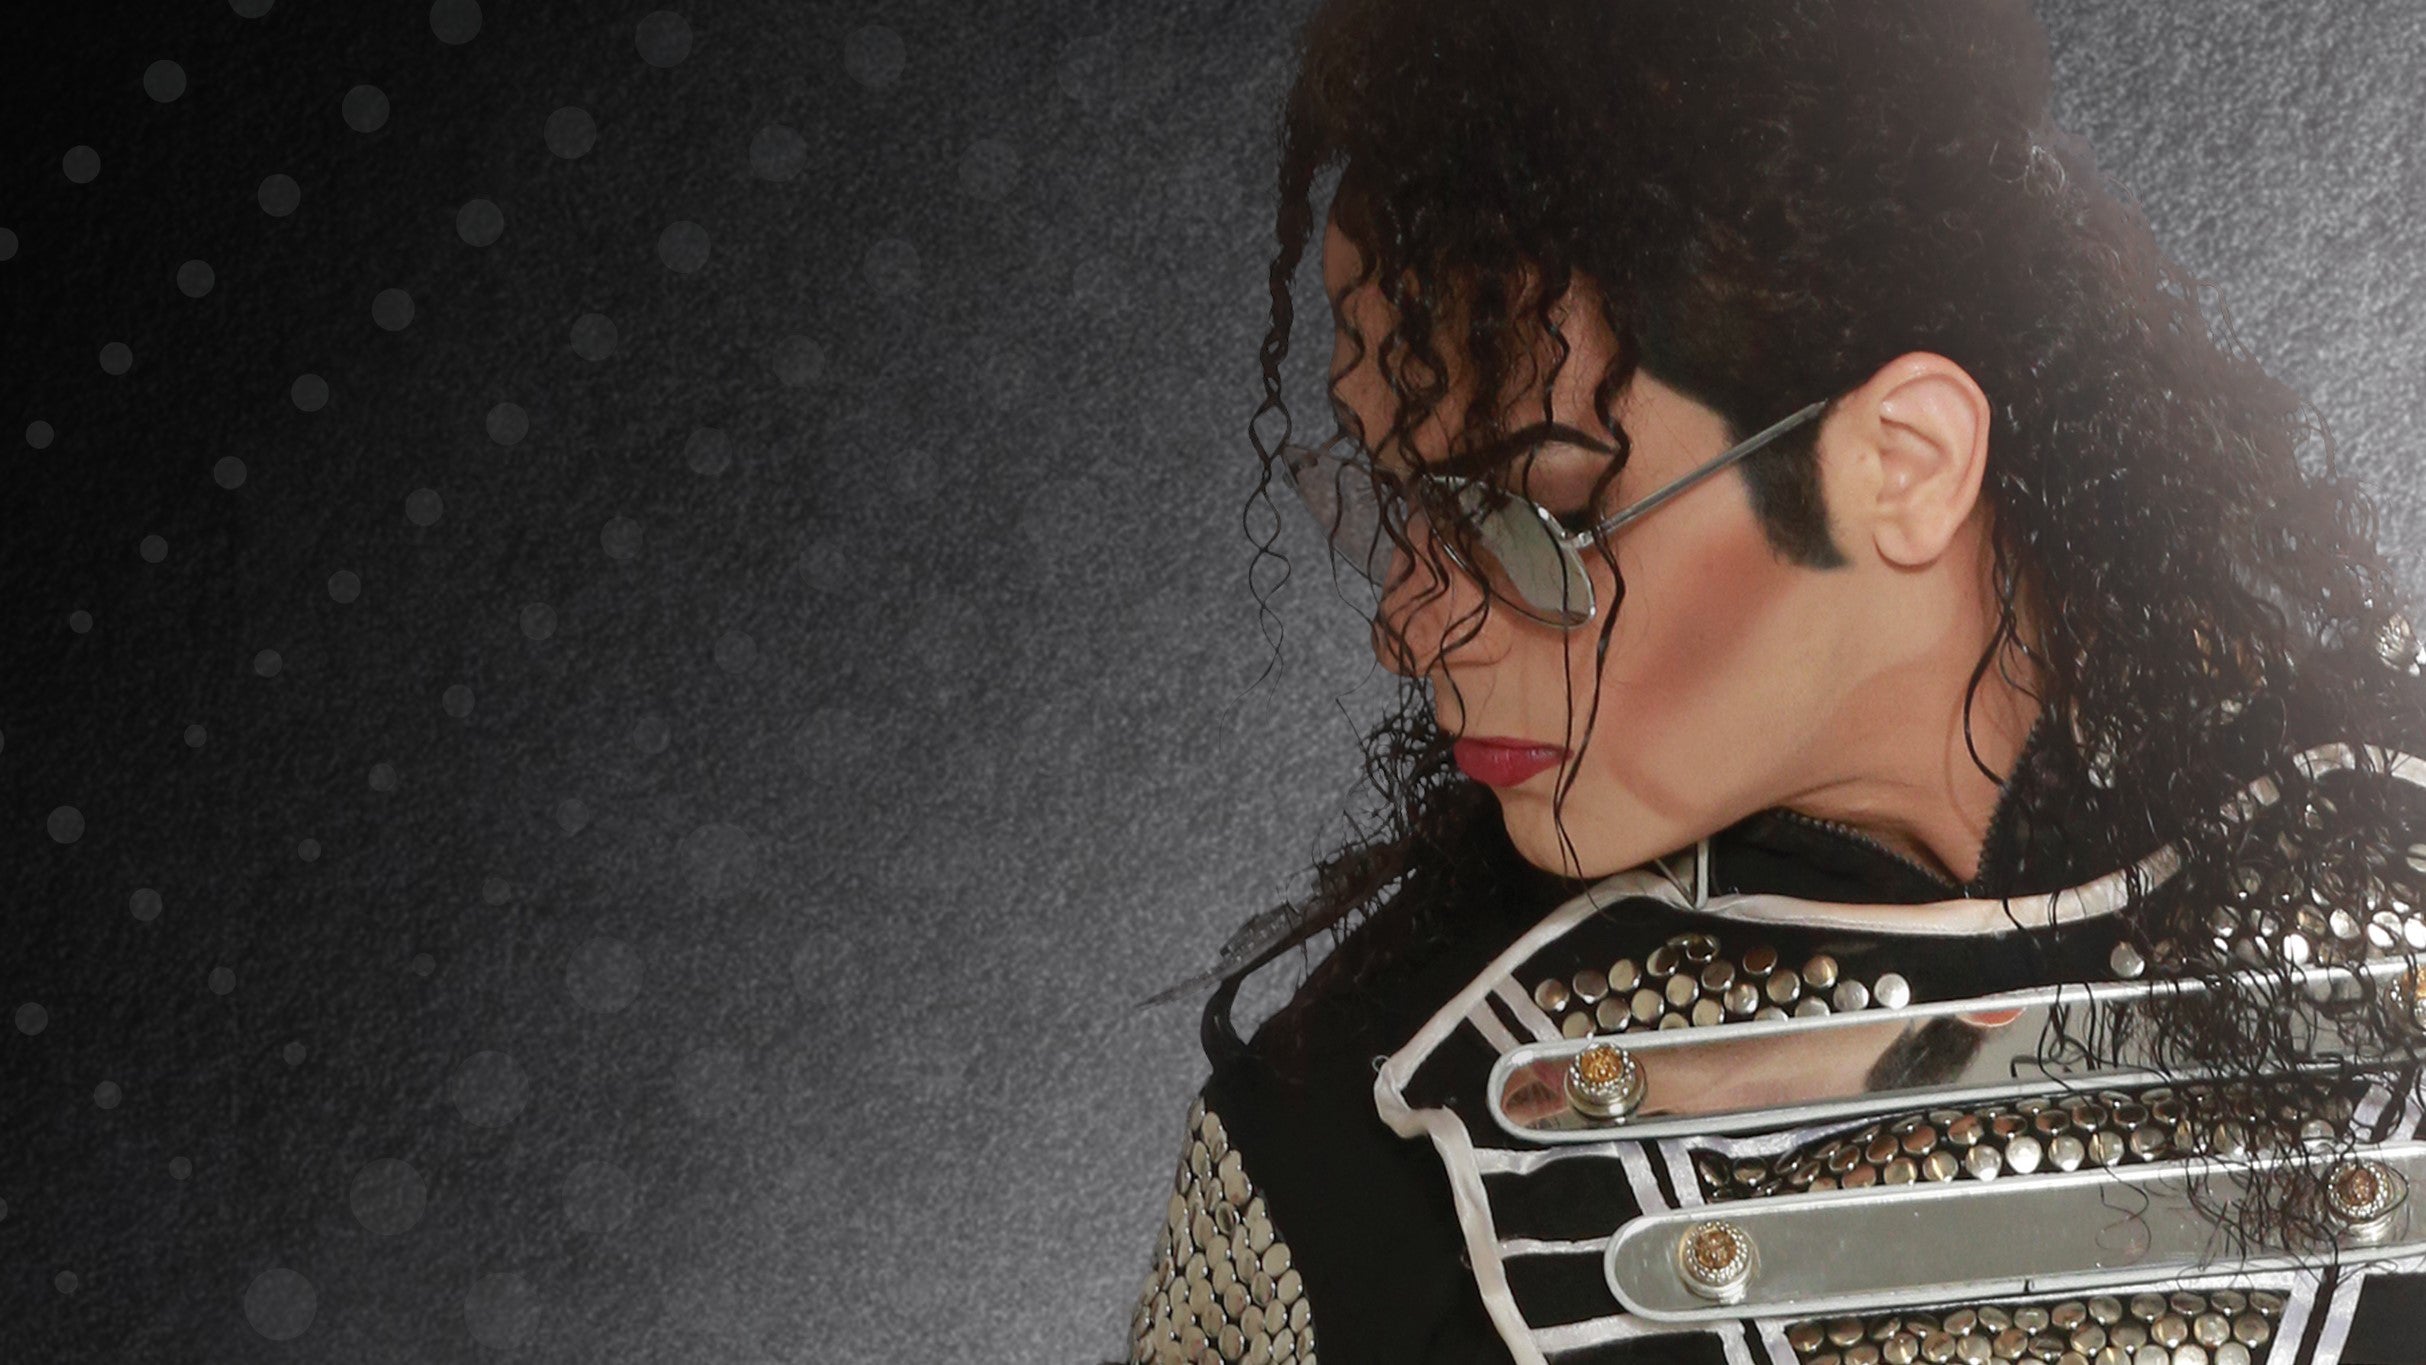 MJ LIVE - Michael Jackson Tribute in Rosemont promo photo for Goldstar Offer #2 presale offer code